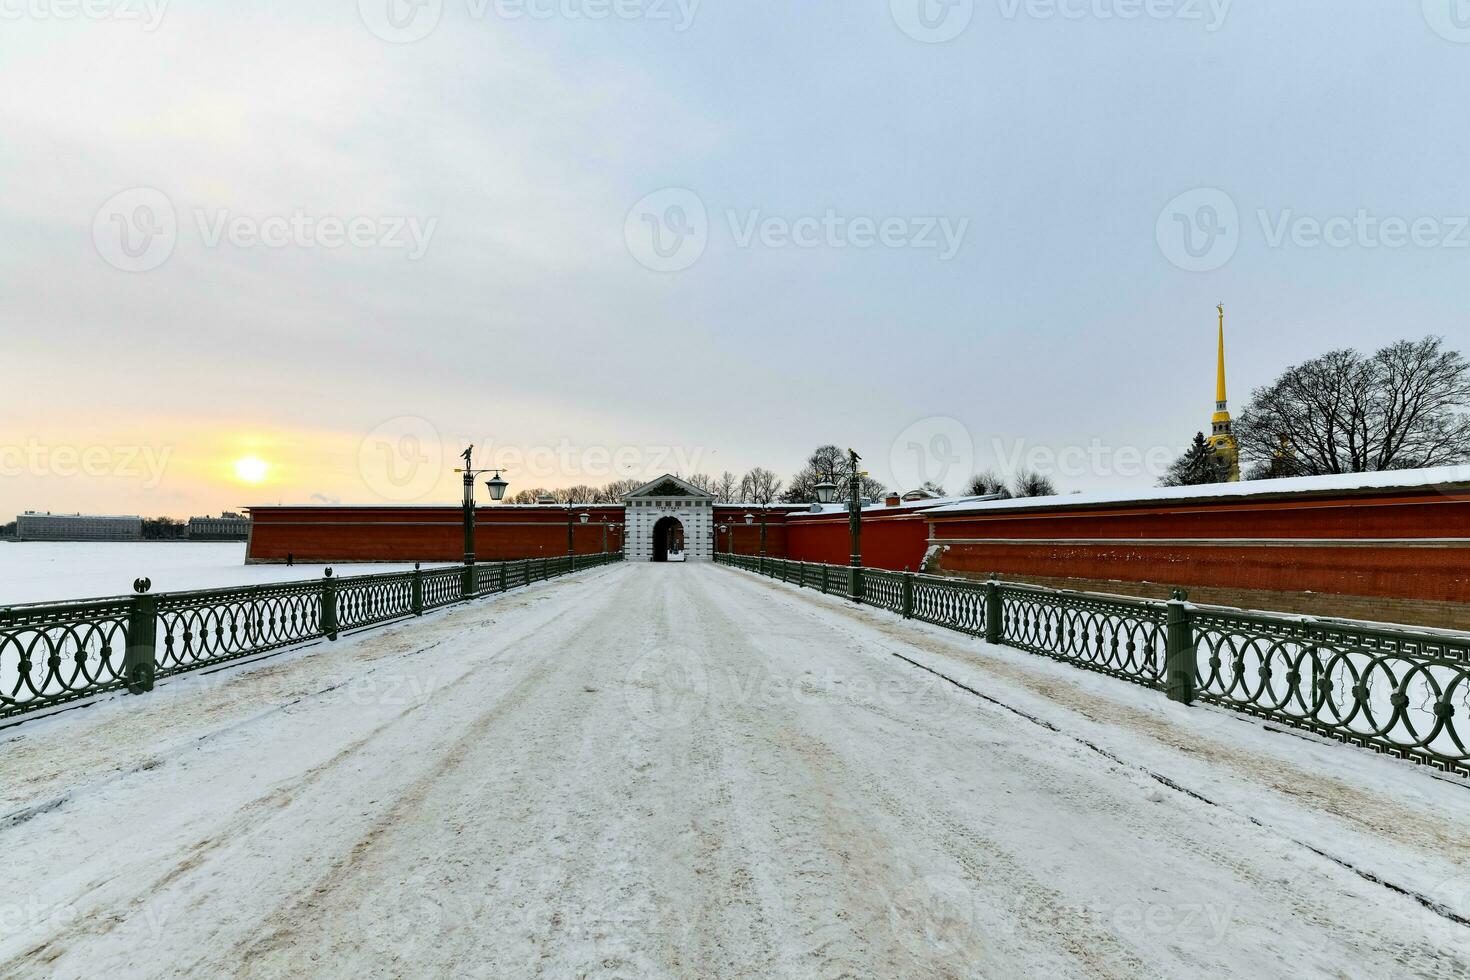 ioannovskiy Tor - - Heilige petersburg, Russland foto